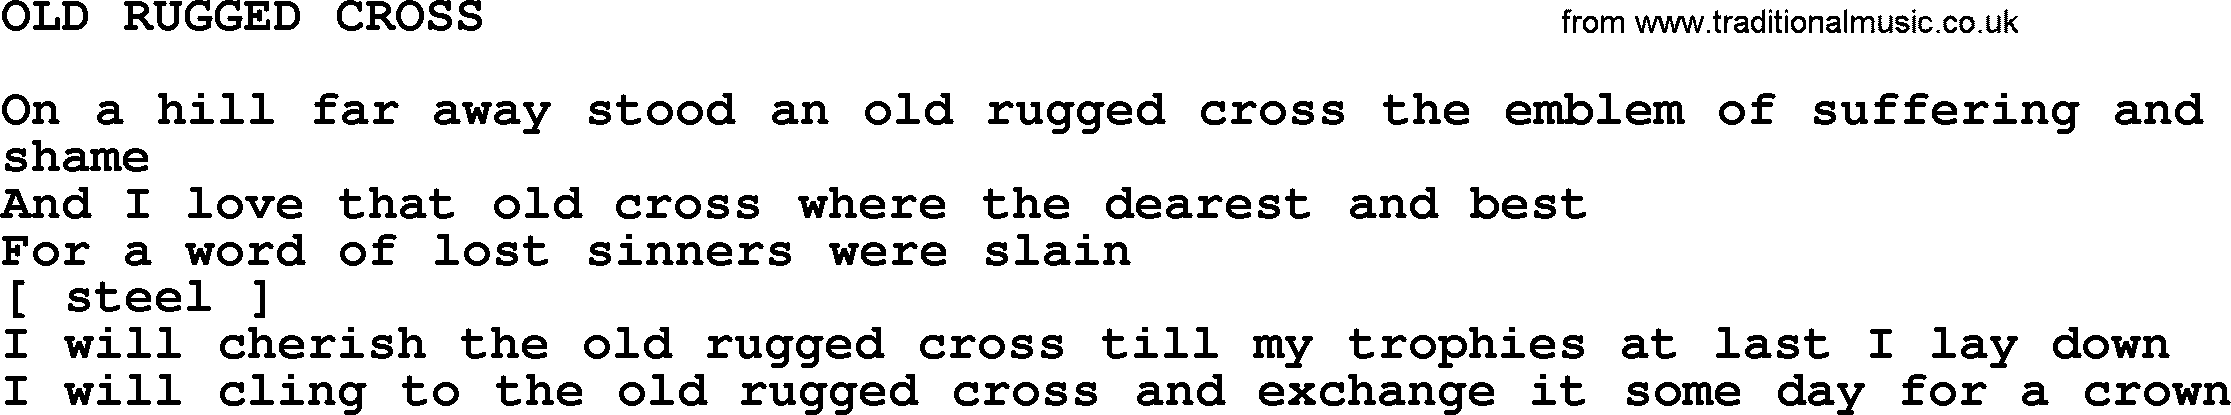 Merle Haggard song: Old Rugged Cross, lyrics.